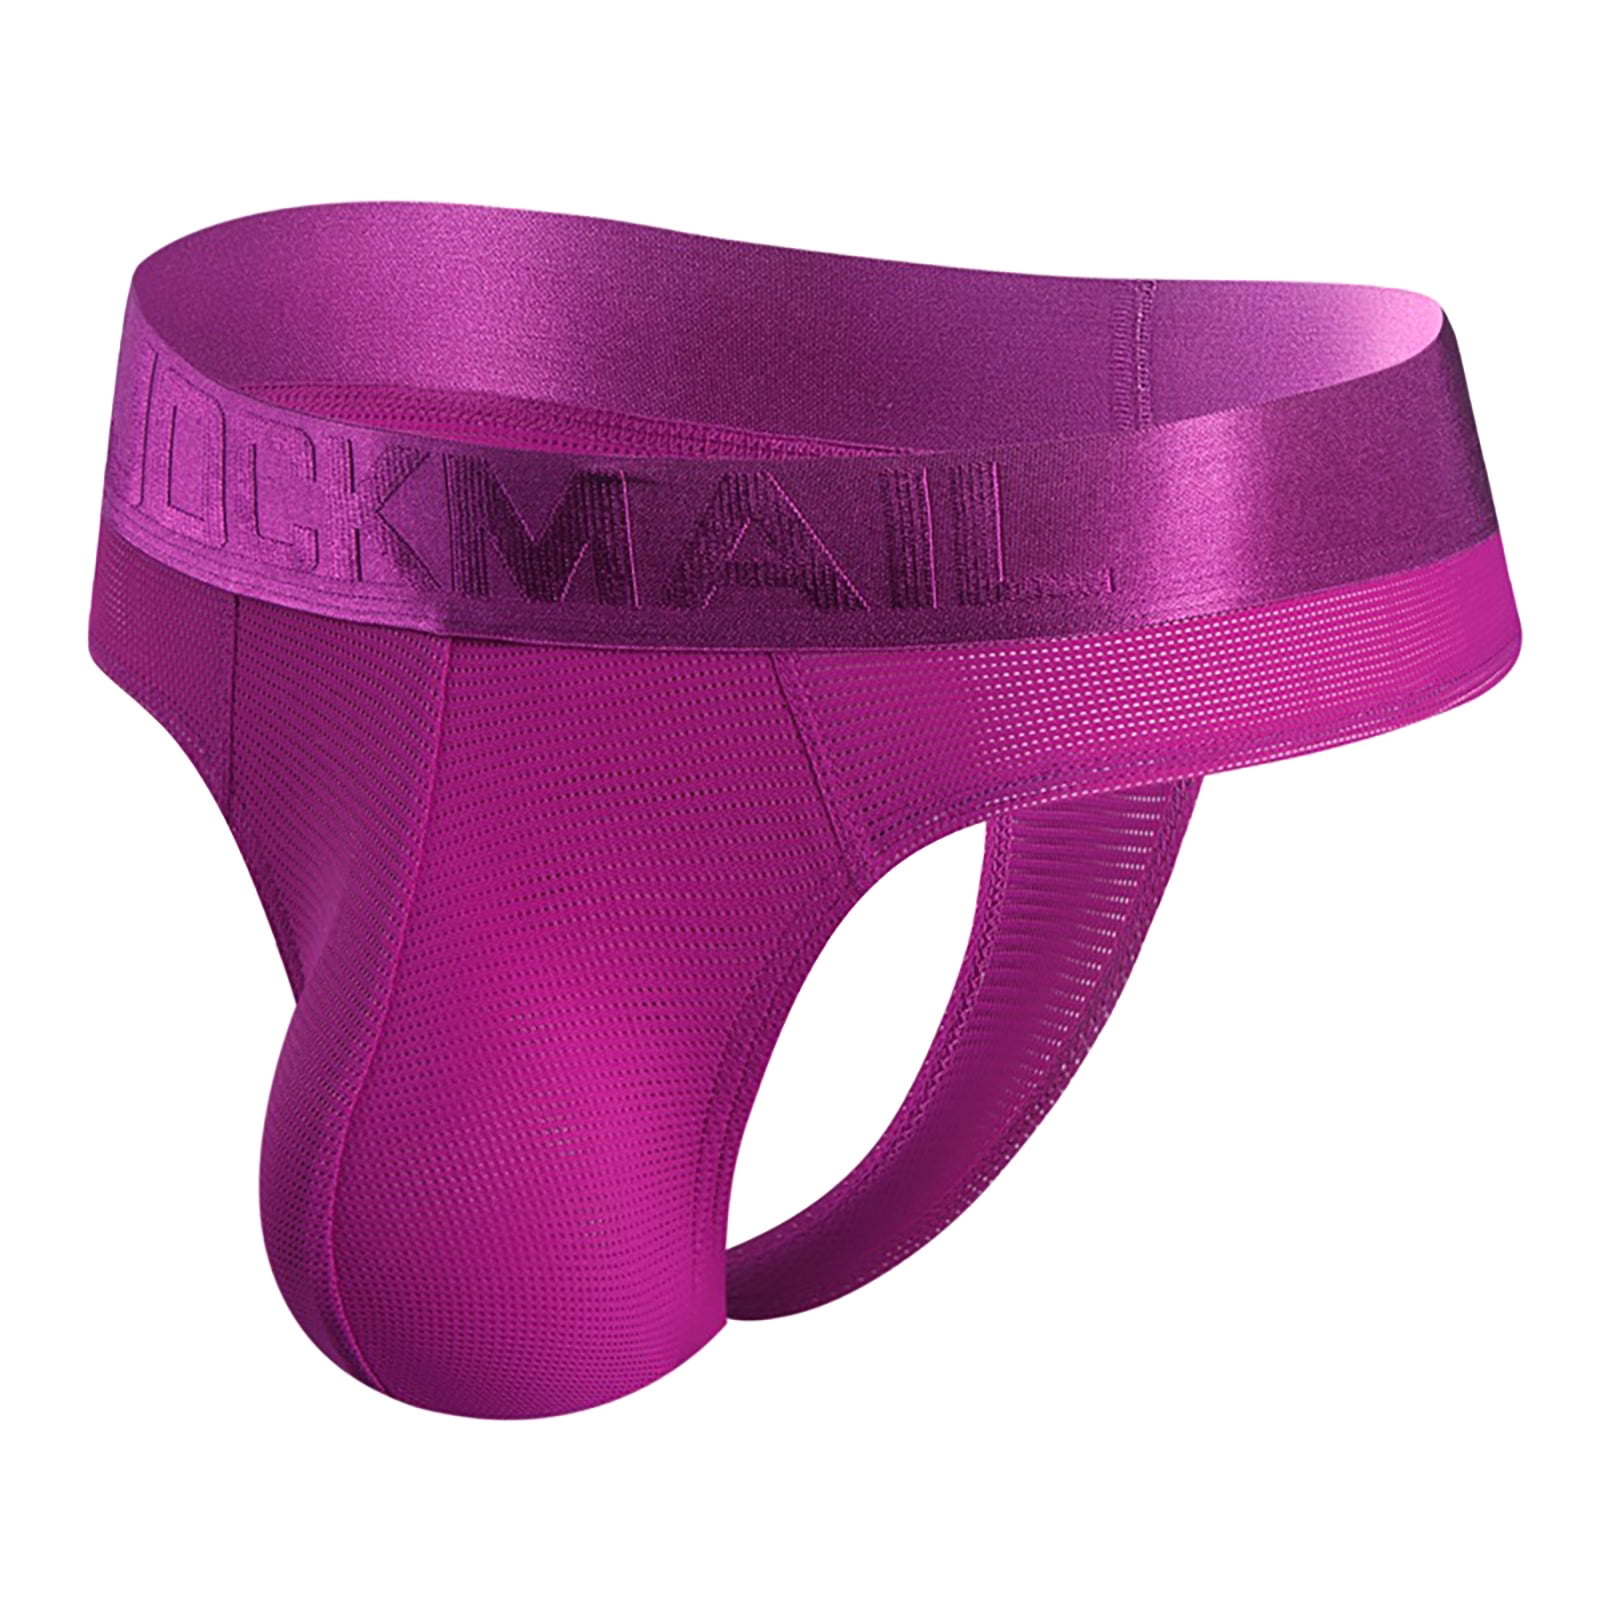 Dndkilg Jock Strap Jockstrap Briefs For Men Male Supporters Athletic Underwear Bikini Purple M